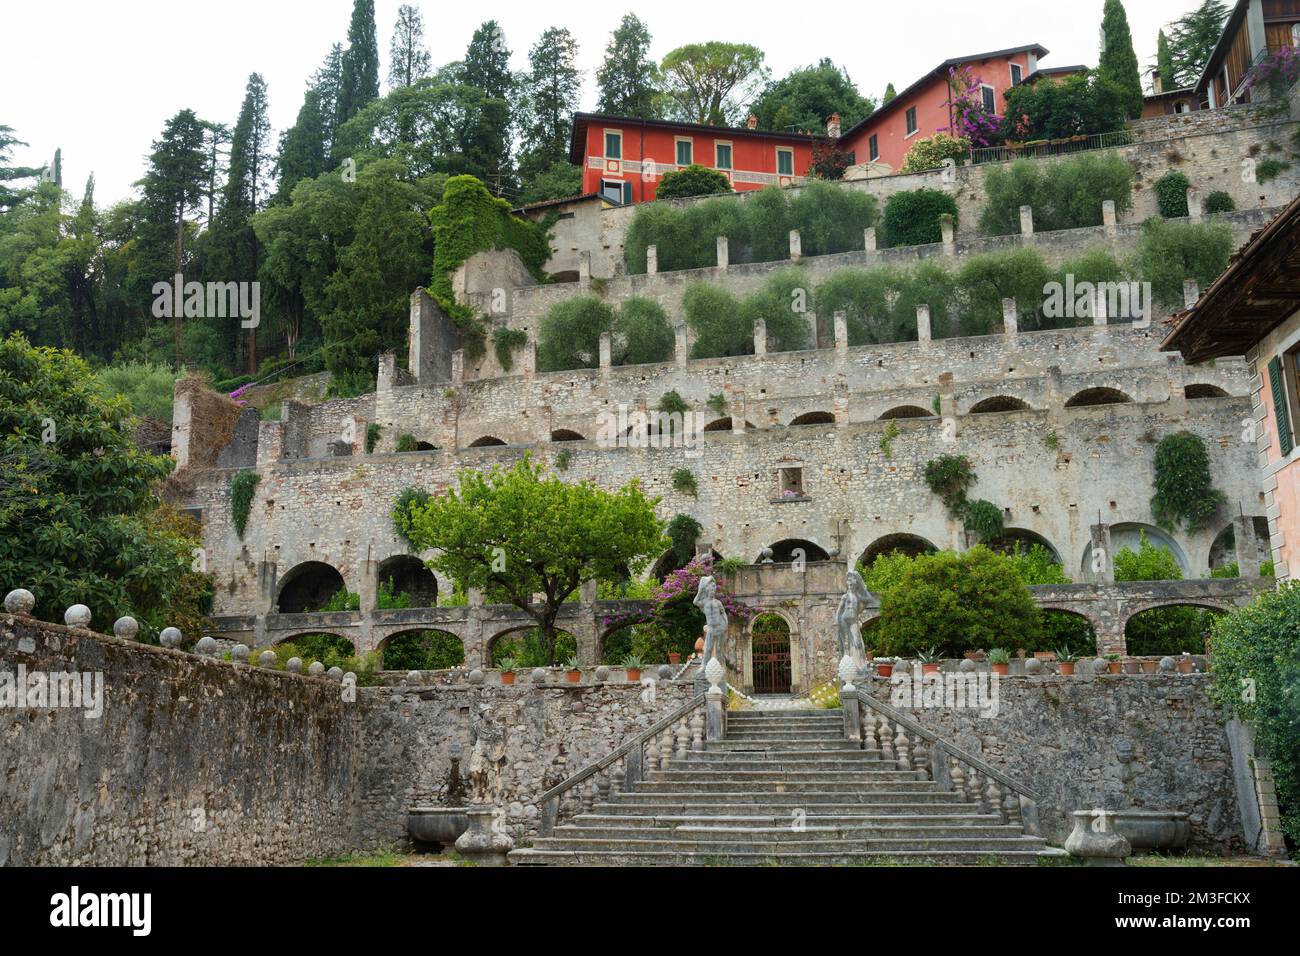 Historic Villa Caprera at Toscolano Maderno, in Brescia province, Lombardy, Italy, on the Garda lake Stock Photo